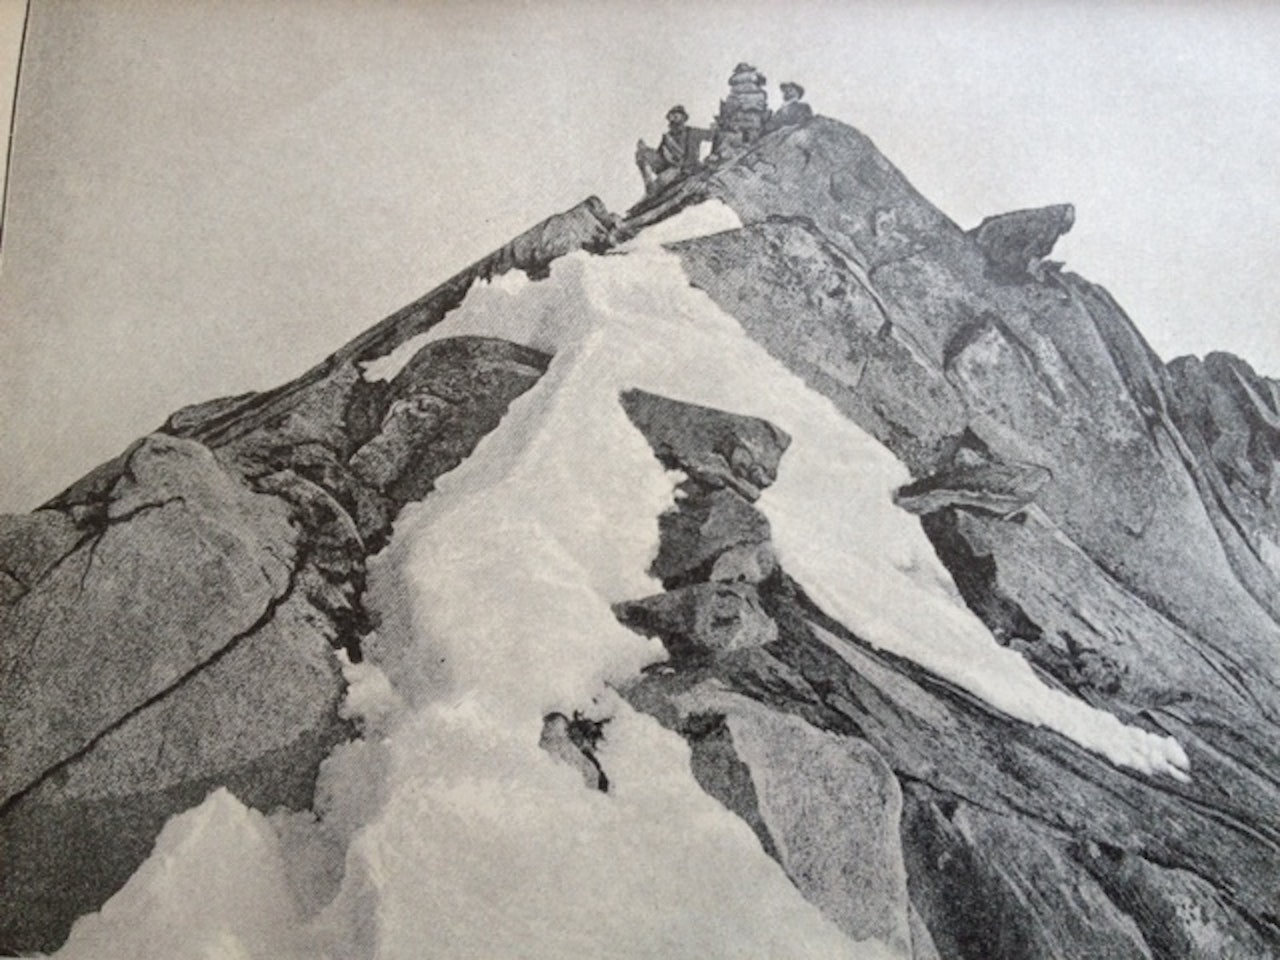 Det første kjente bilde fra toppen av Storen. Bildet er tatt av Carl Hall den 5. august 1885 og viser Mathias Soggemoen og Thorgeir Sulheim ved varden. Dette er 5. bestigning av toppen, og de klatret via Heftyes renne. 